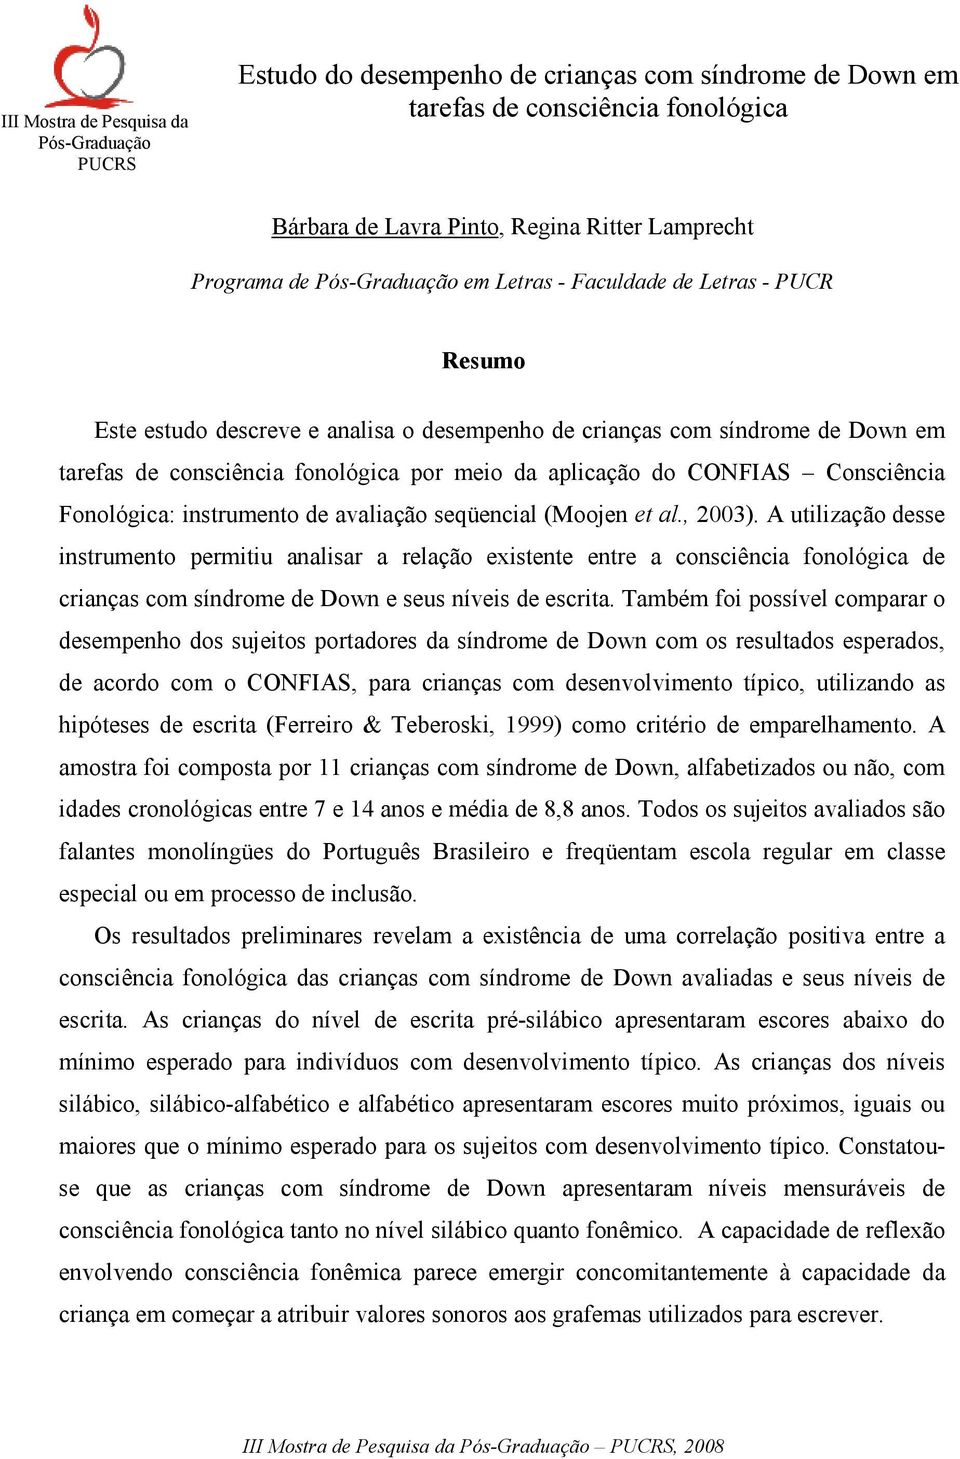 CONFIAS Consciência Fonológica: instrumento de avaliação seqüencial (Moojen et al., 2003).